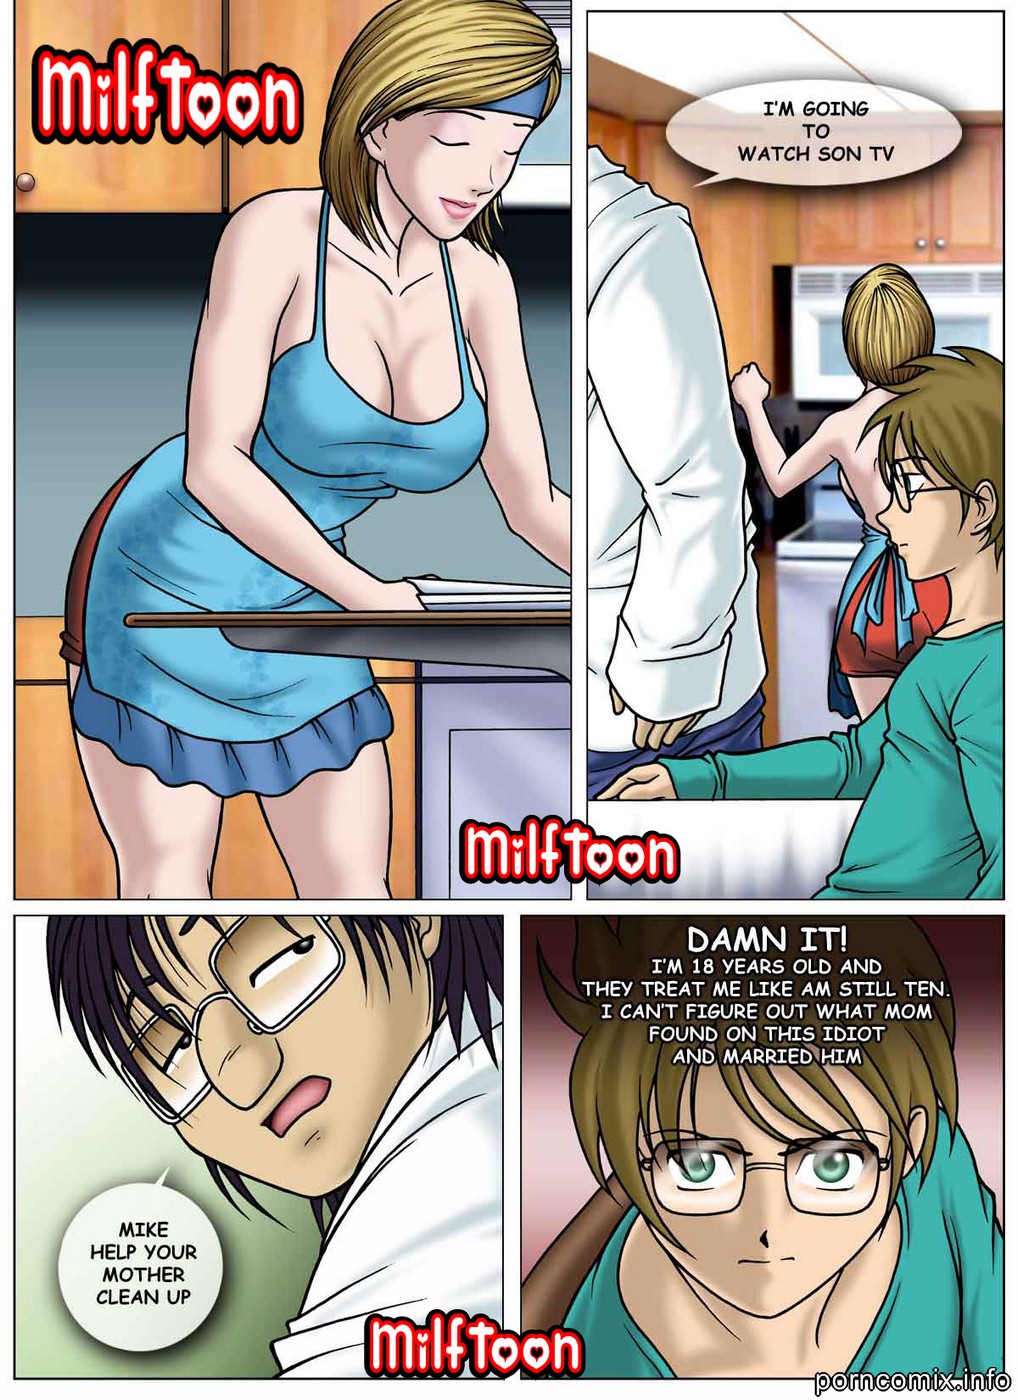 Porn Comics - Milftoon- Sorpresa porn comics 8 muses